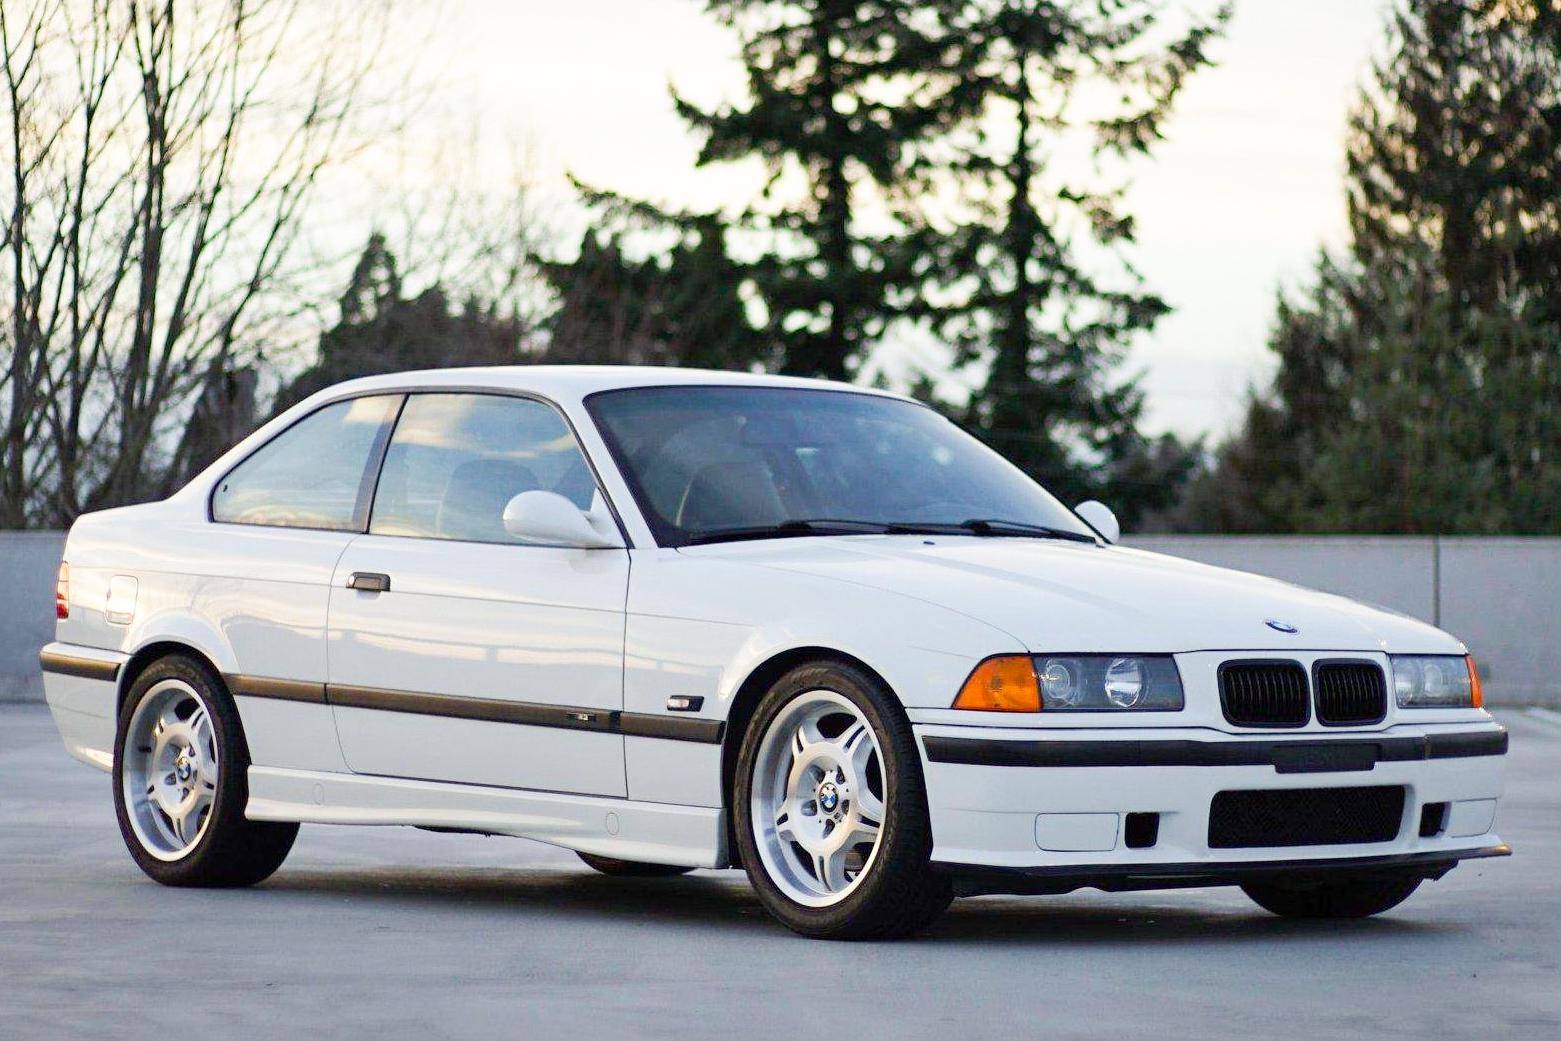 1998 BMW E36 M3 Coupe 5-Speed Modified